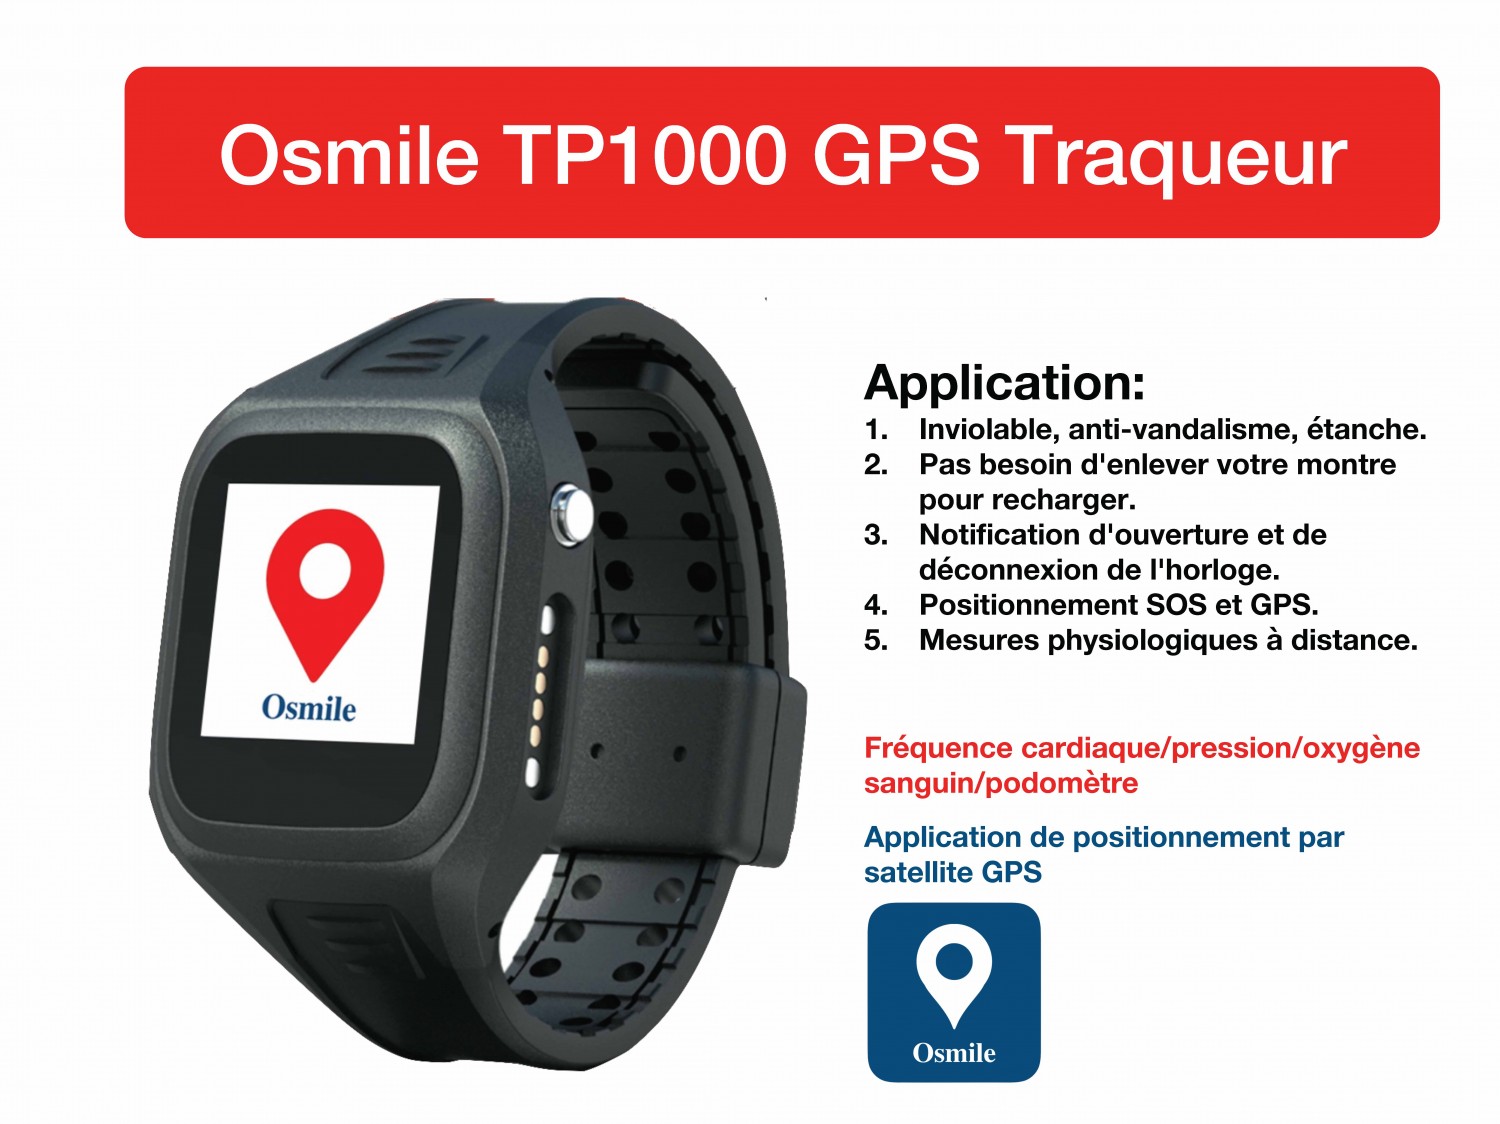 Osmile TP1000 Prisonnier / Quarantaine Montre GPS Traqueur